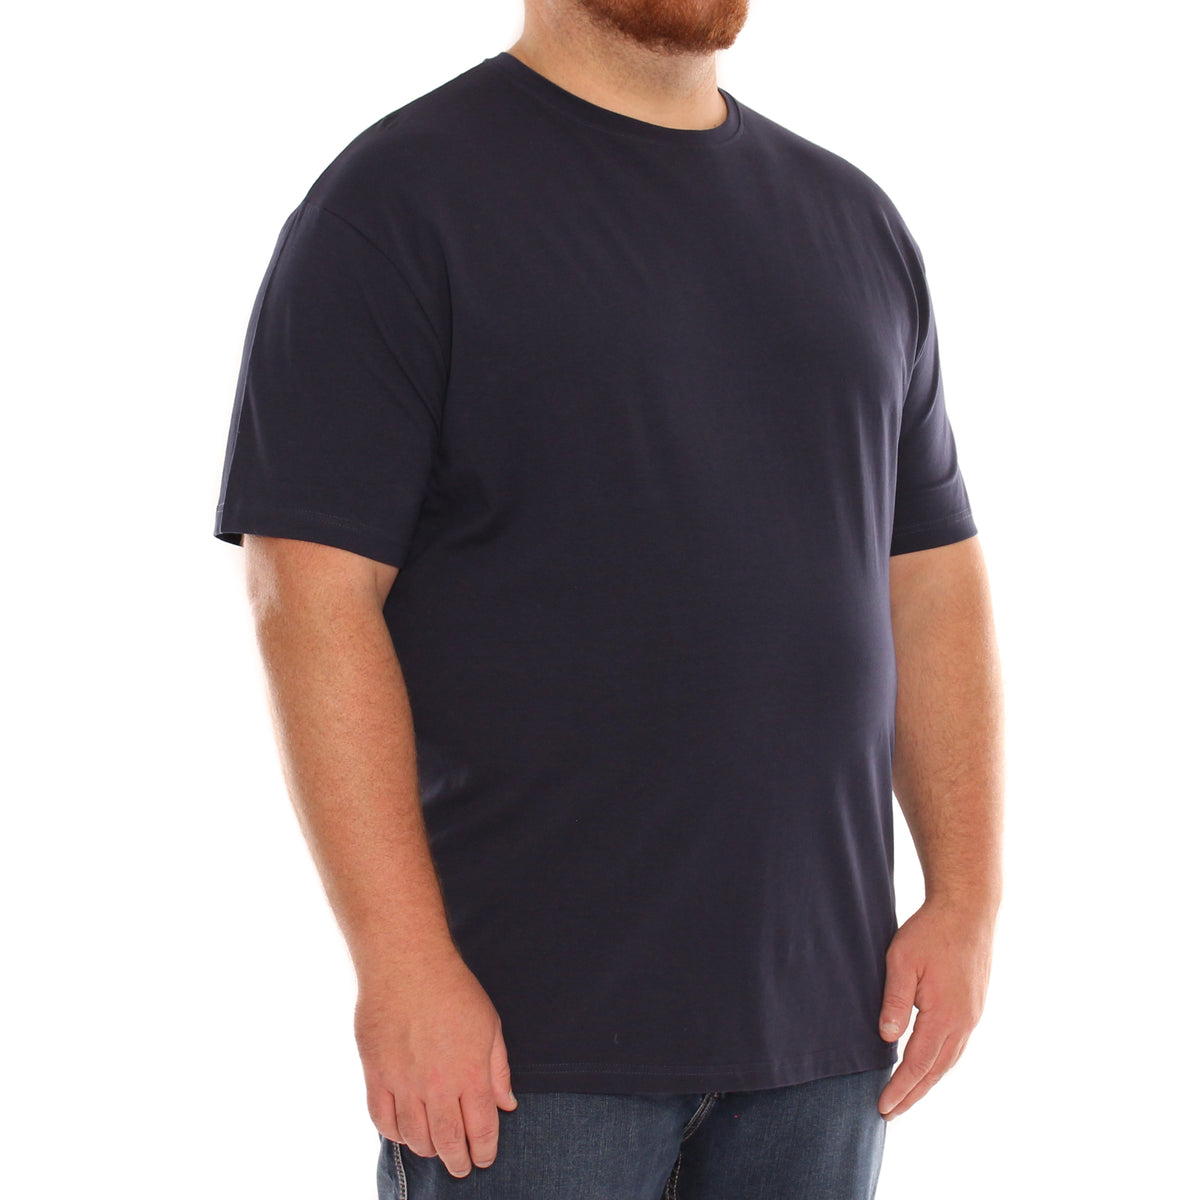 T-Shirt uni - 27,98 $ à l'achat de 2 ou +